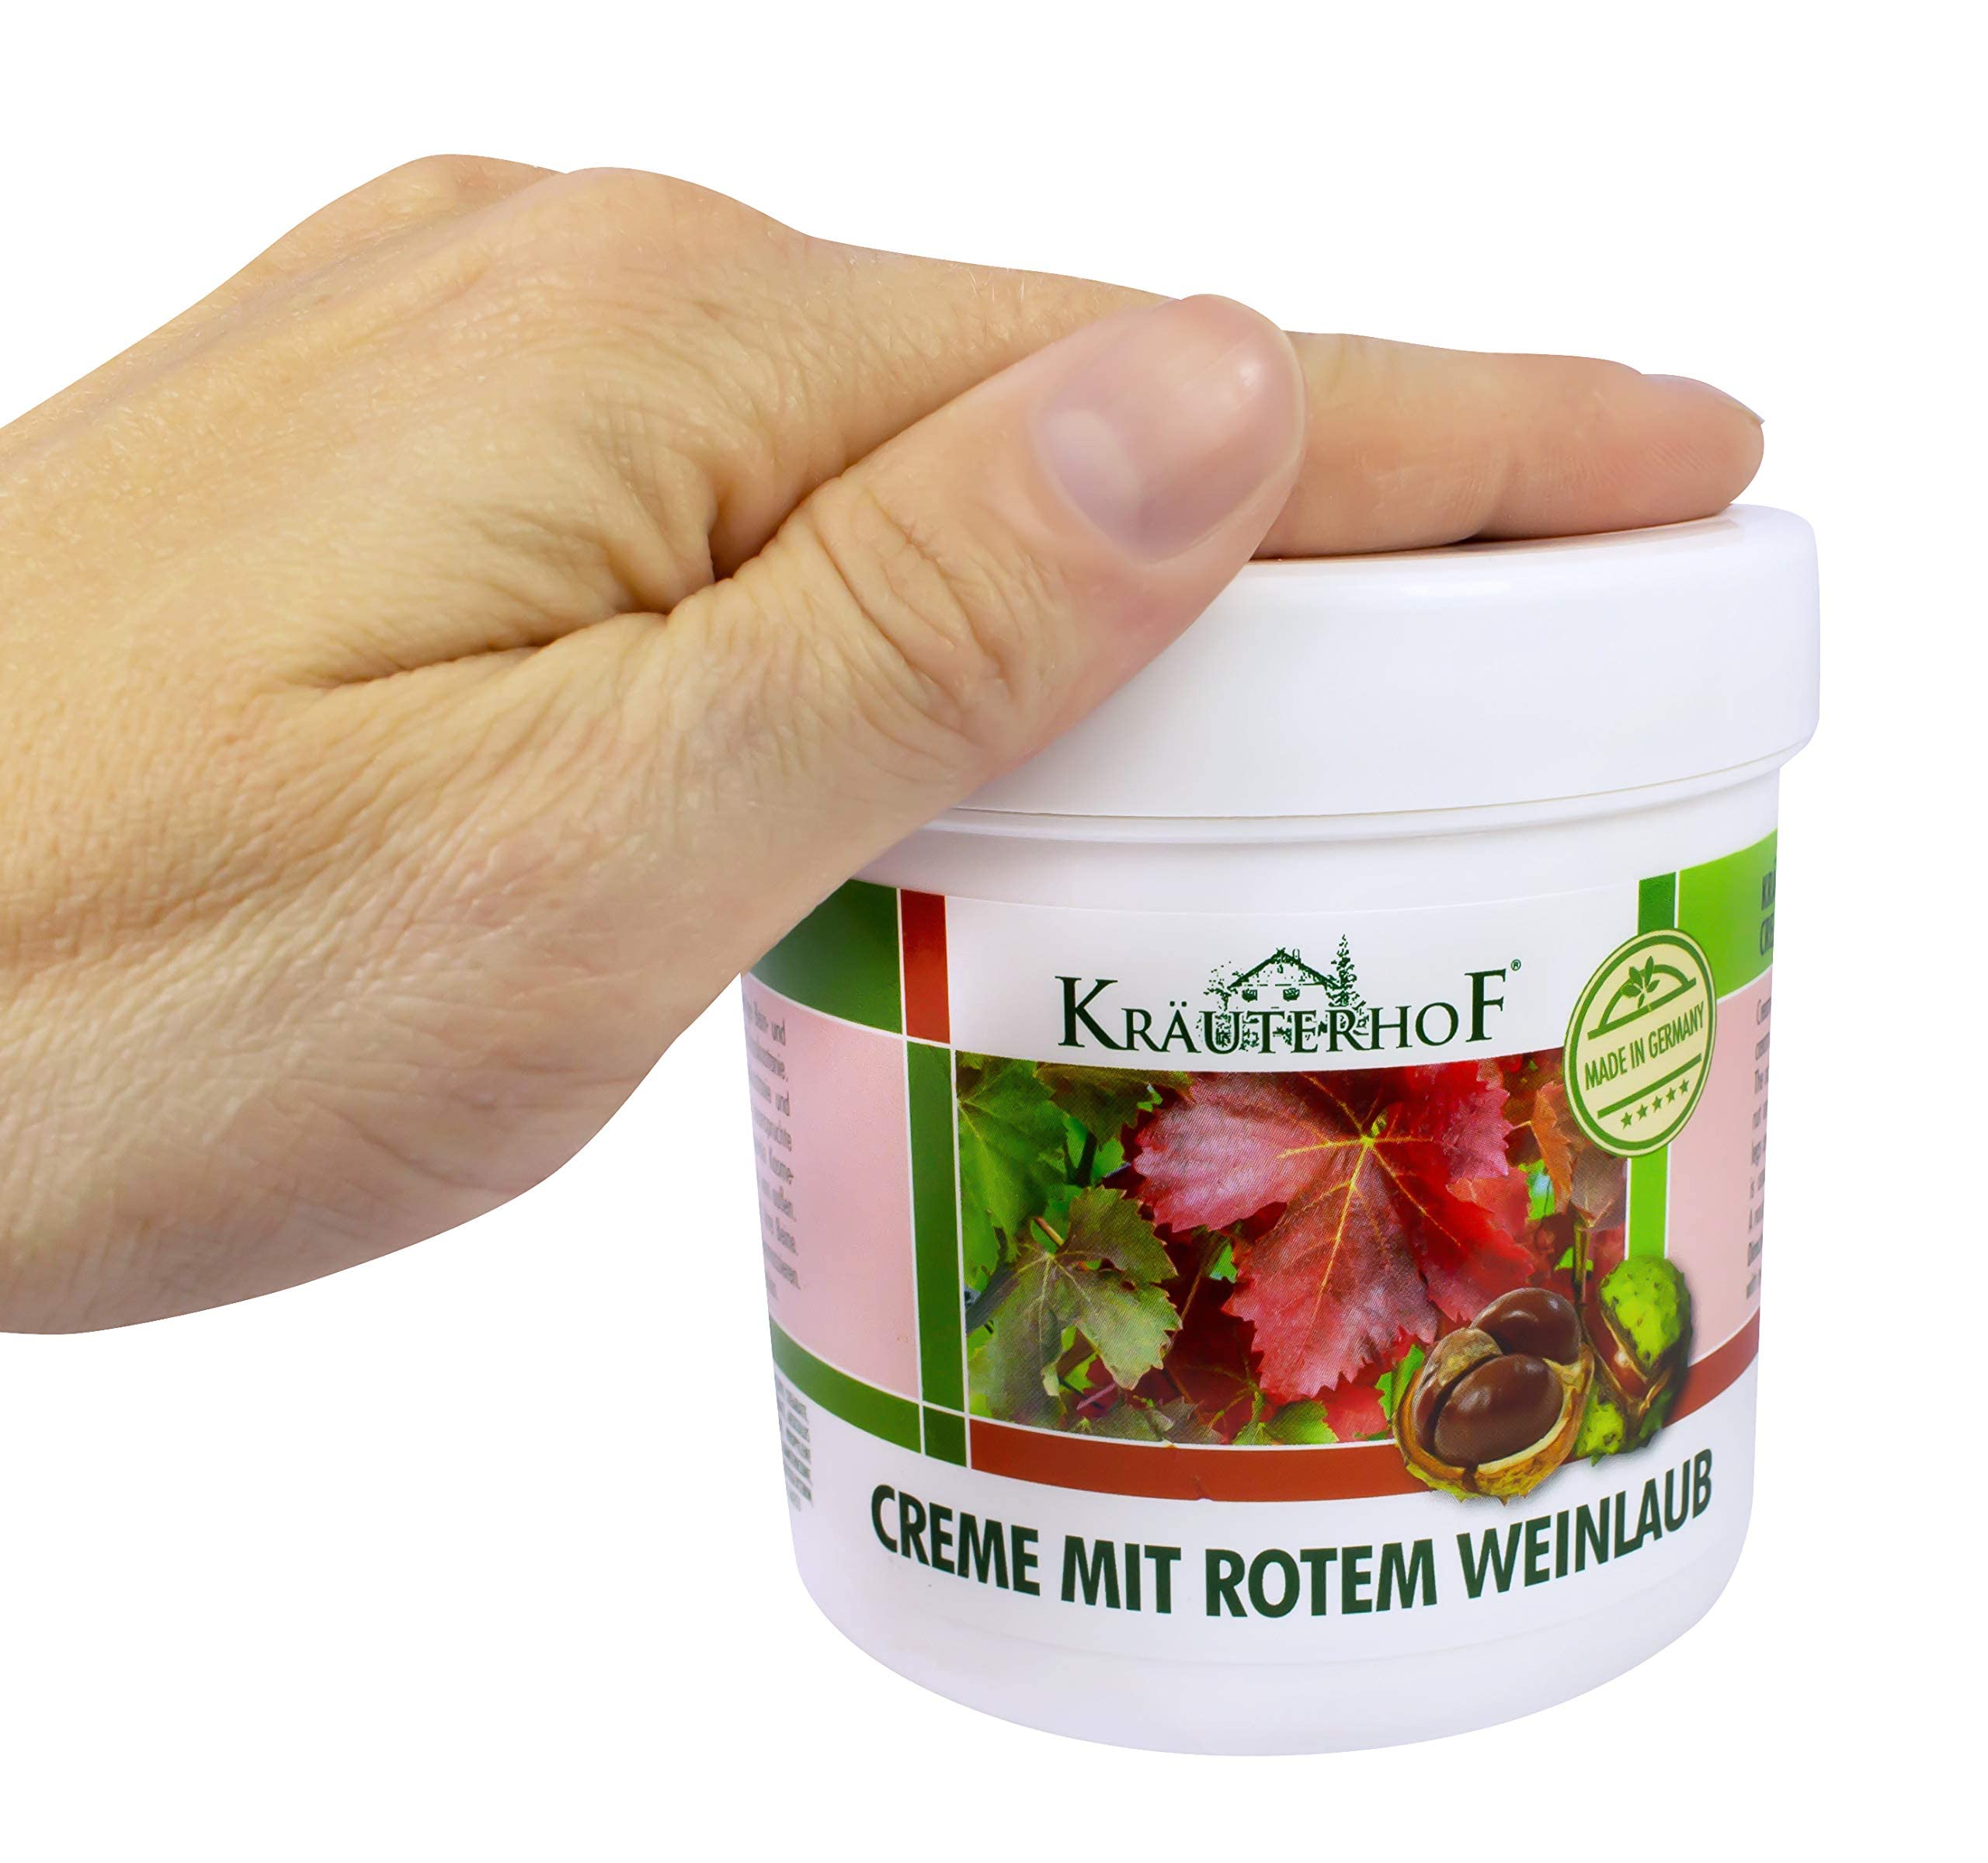 Krauterhof Horse Chestnut & Red Vine Cream for Varicose Veins, Aching Legs - 250ml, All Skin Types